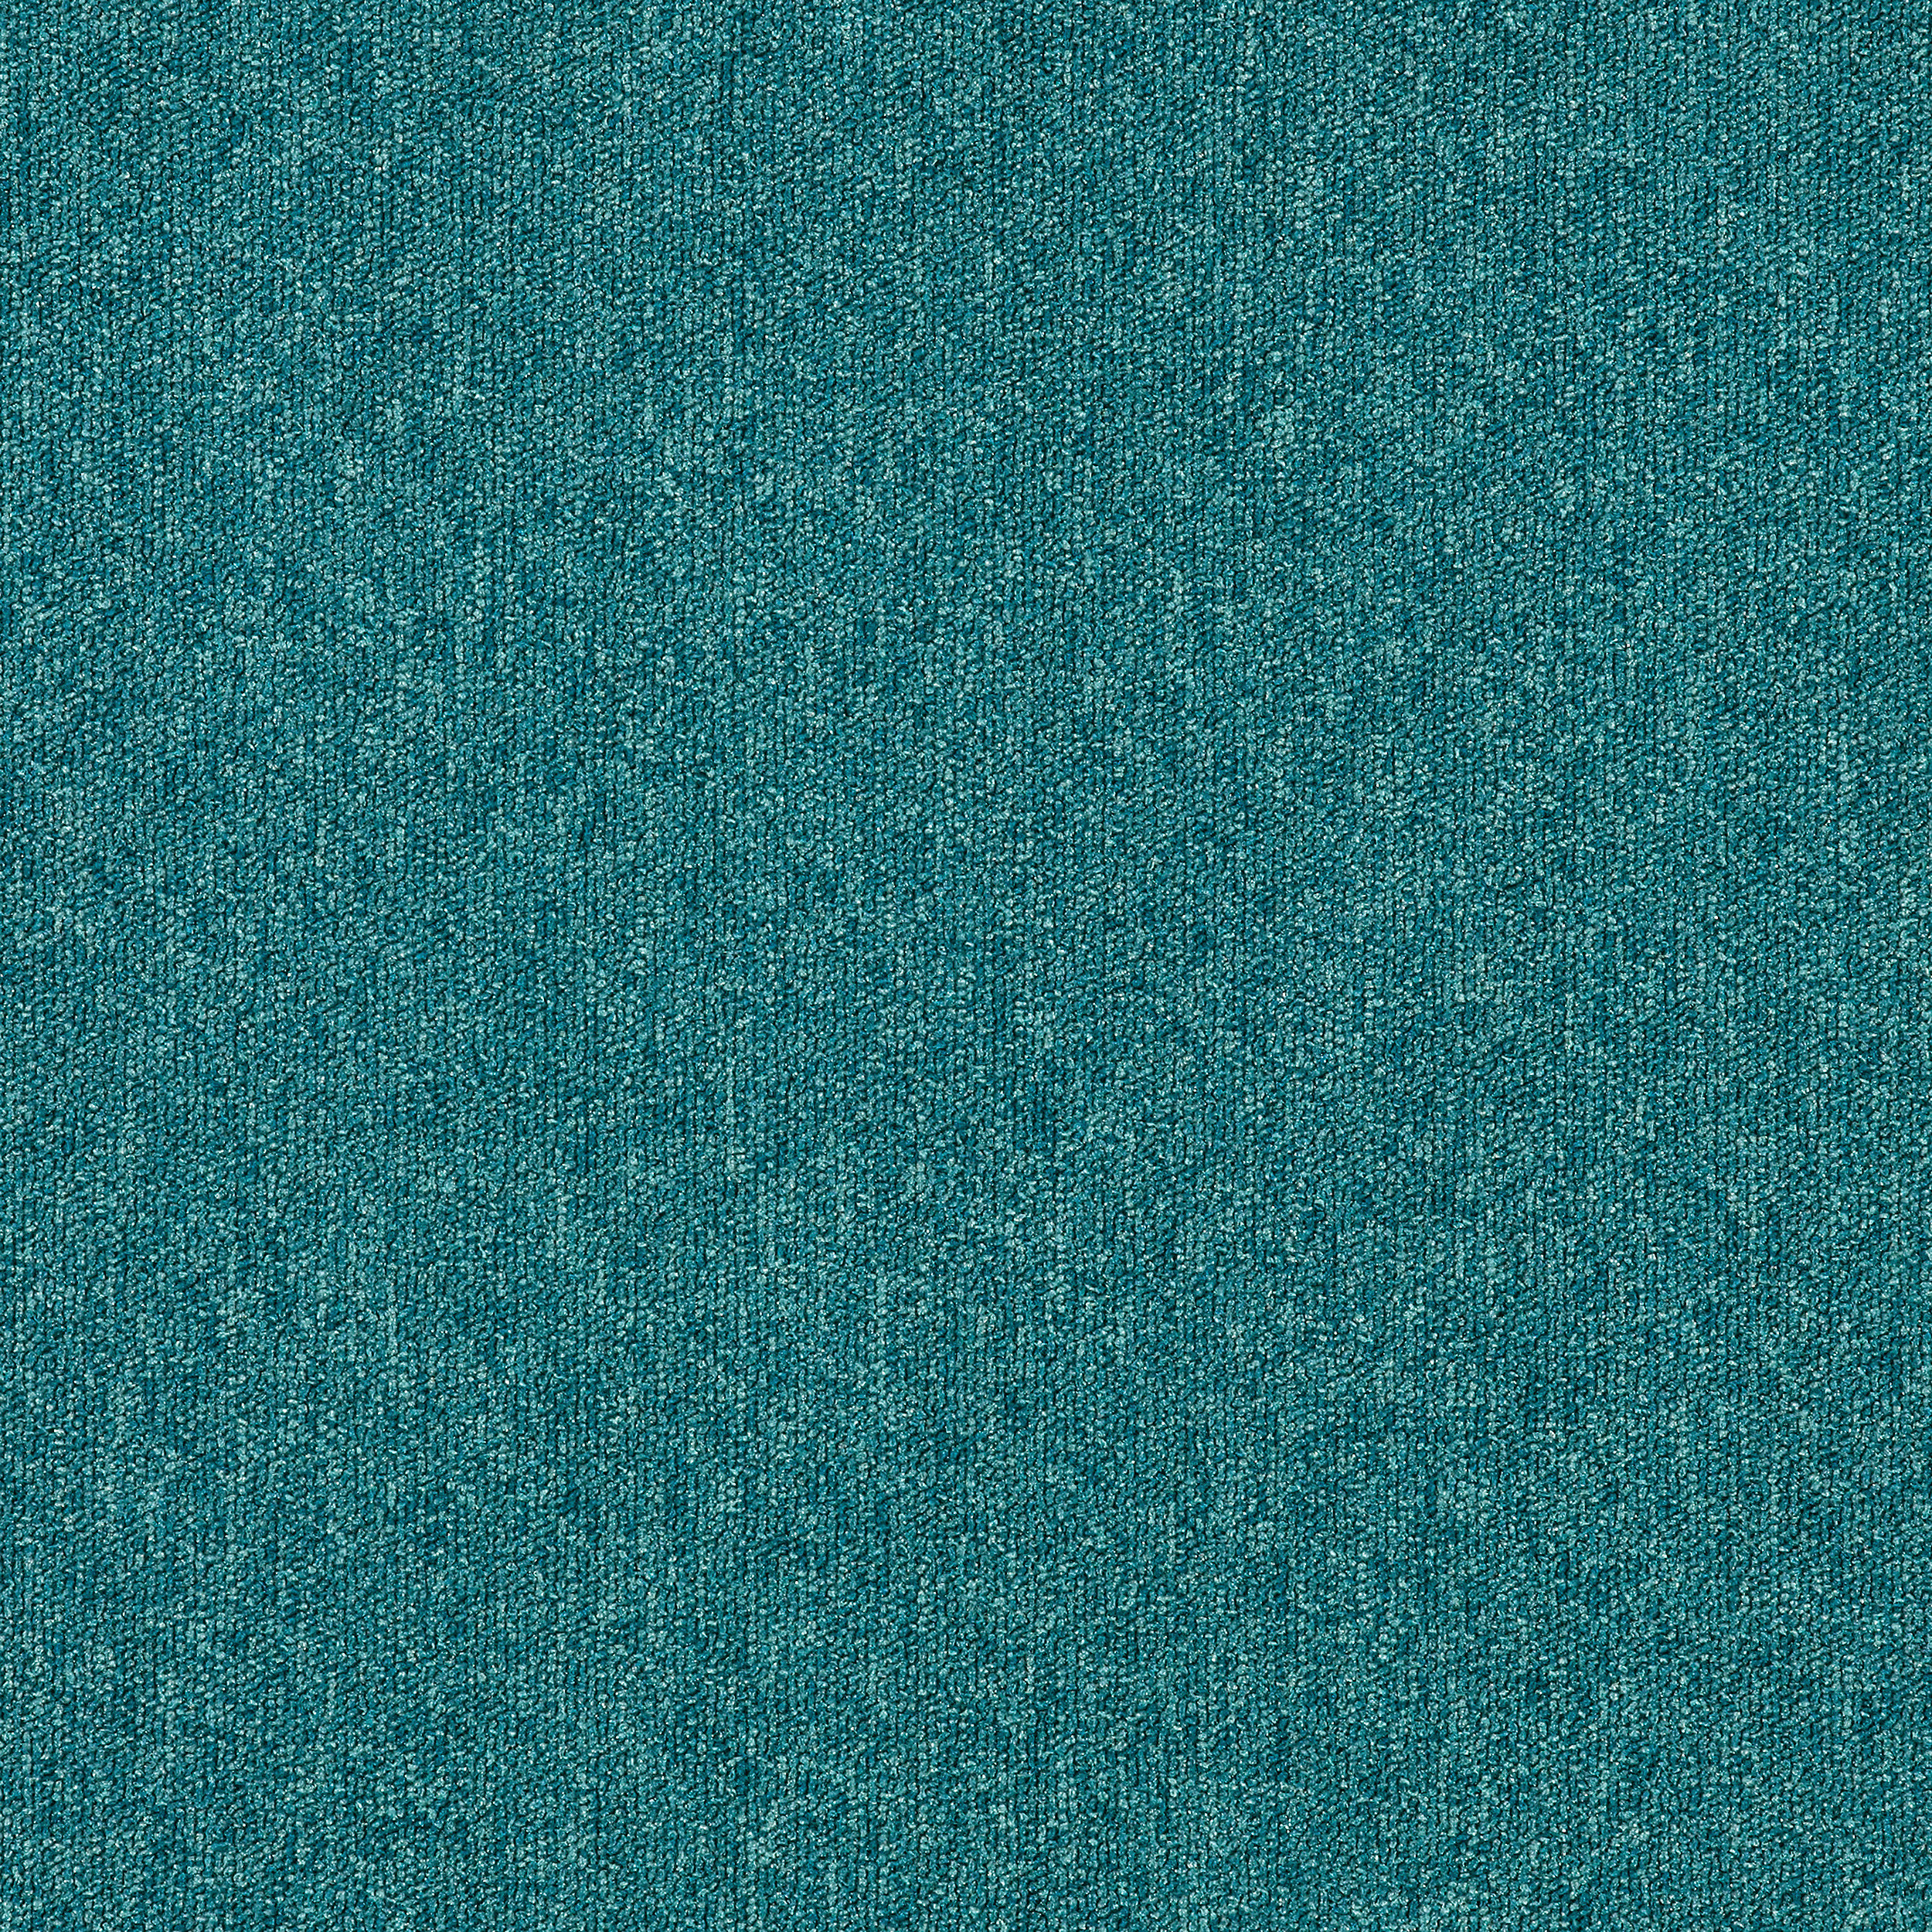 Heuga 580 II carpet tile in Reef número de imagen 6